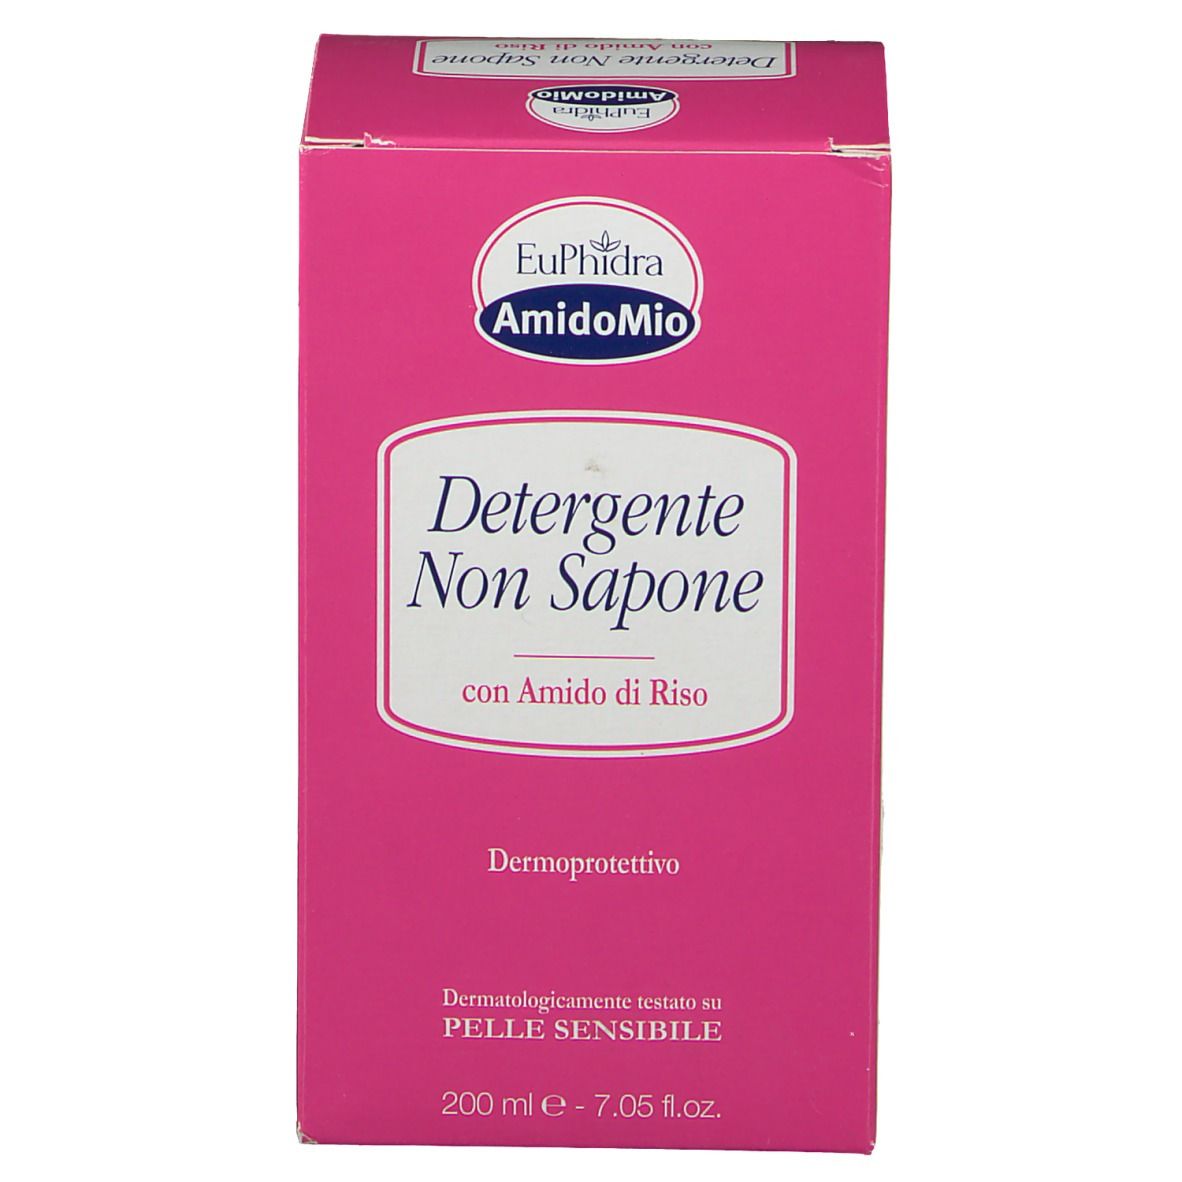 Detergente Non Sapone Euphidra : Recensioni